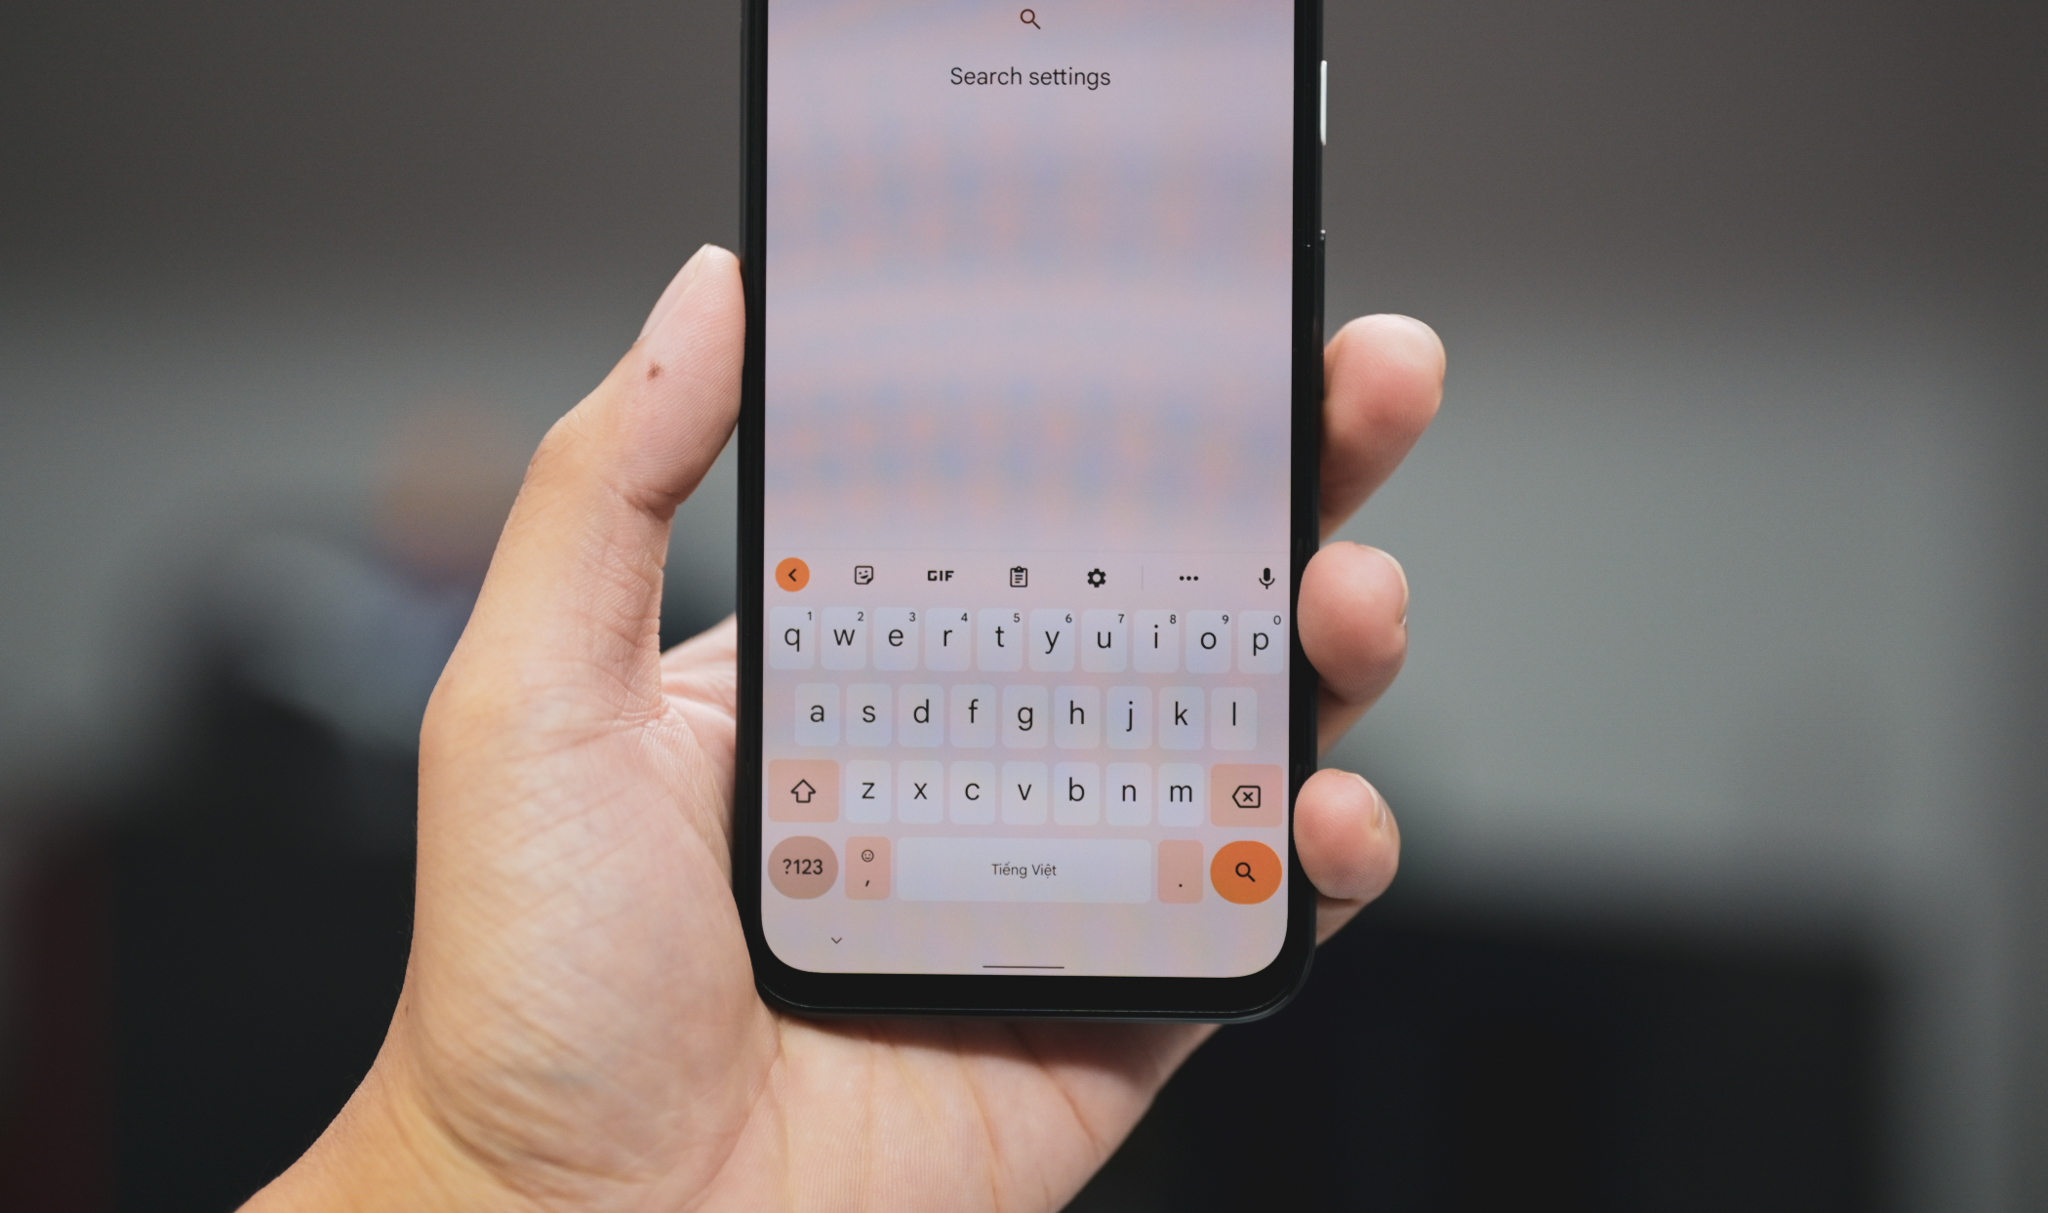 Đây là bàn phím Gboard mới trên Android 12 được áp dụng ngôn ngữ Material You